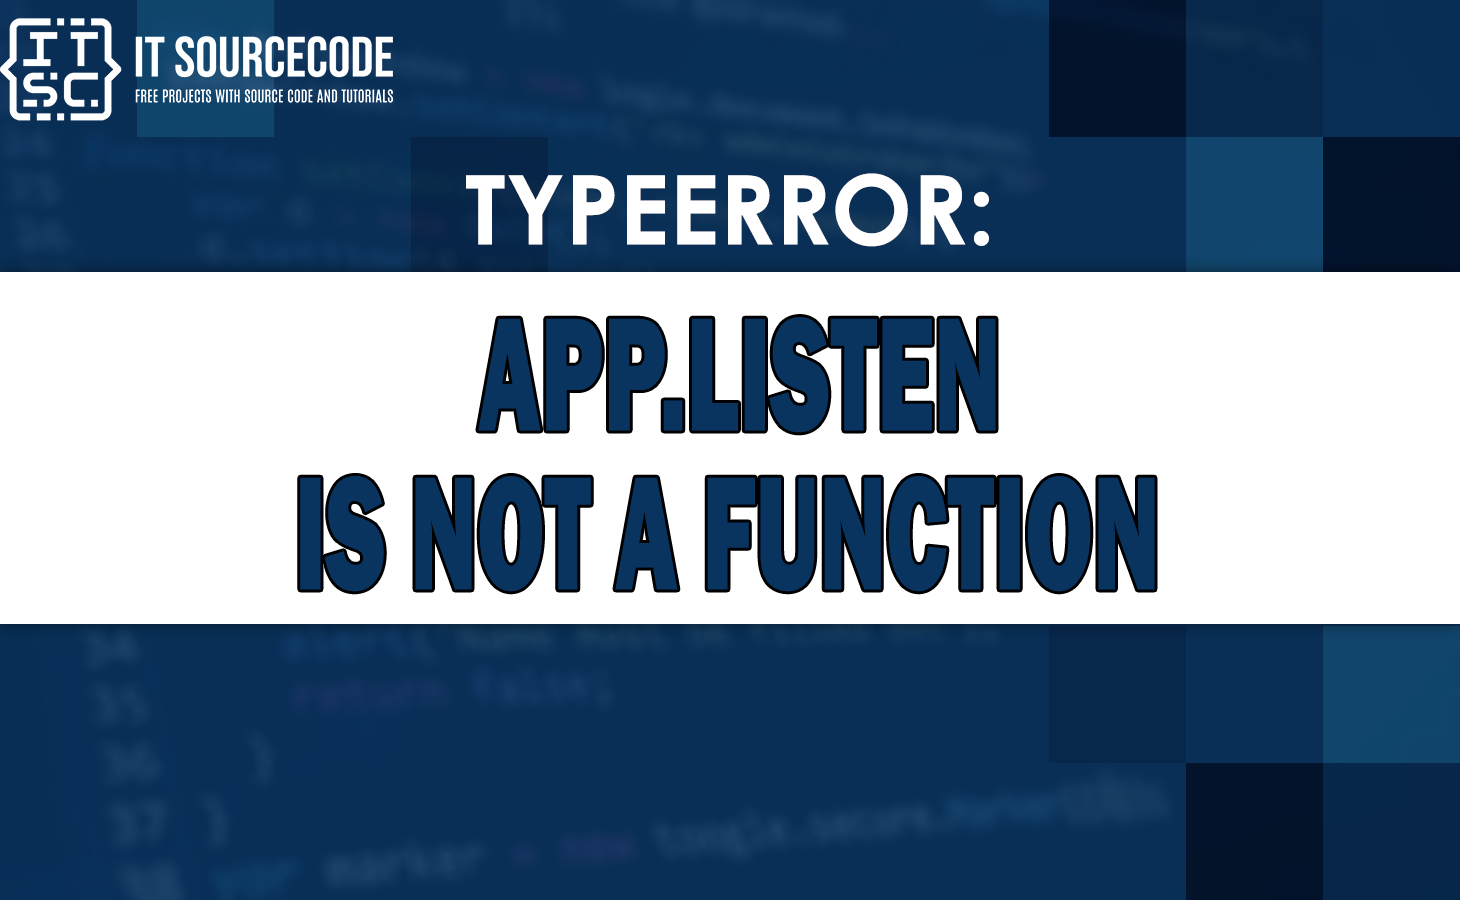 typeerror app.listen is not a function